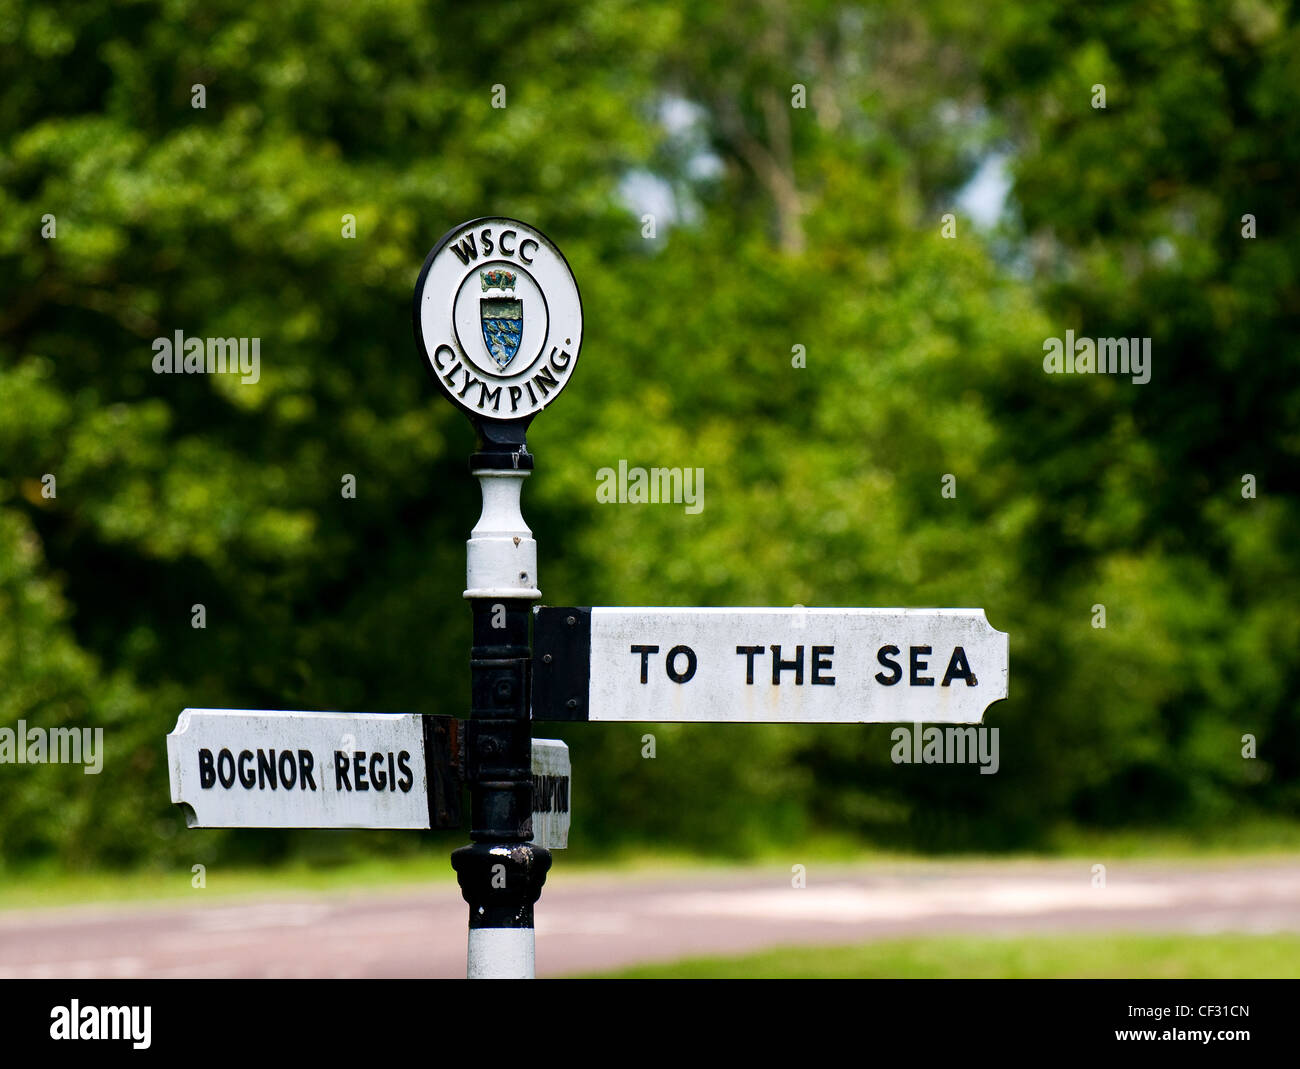 Ein Straßenschild mit Richtungen "TO THE SEA" und "BOGNOR REGIS". Stockfoto